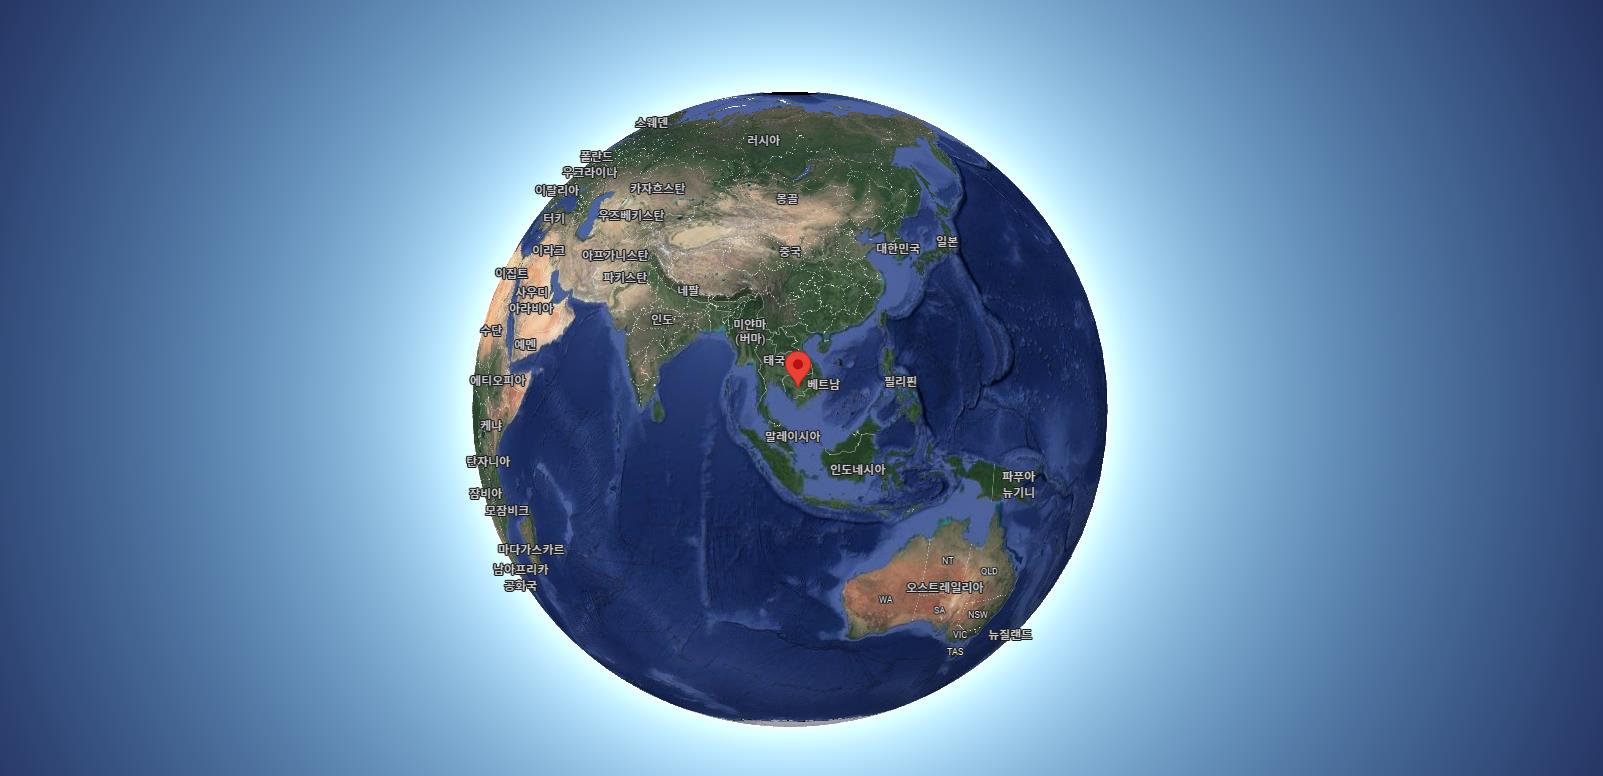 캄보디아 지도 
캄보디아 위성지도
캄보디아 위성도